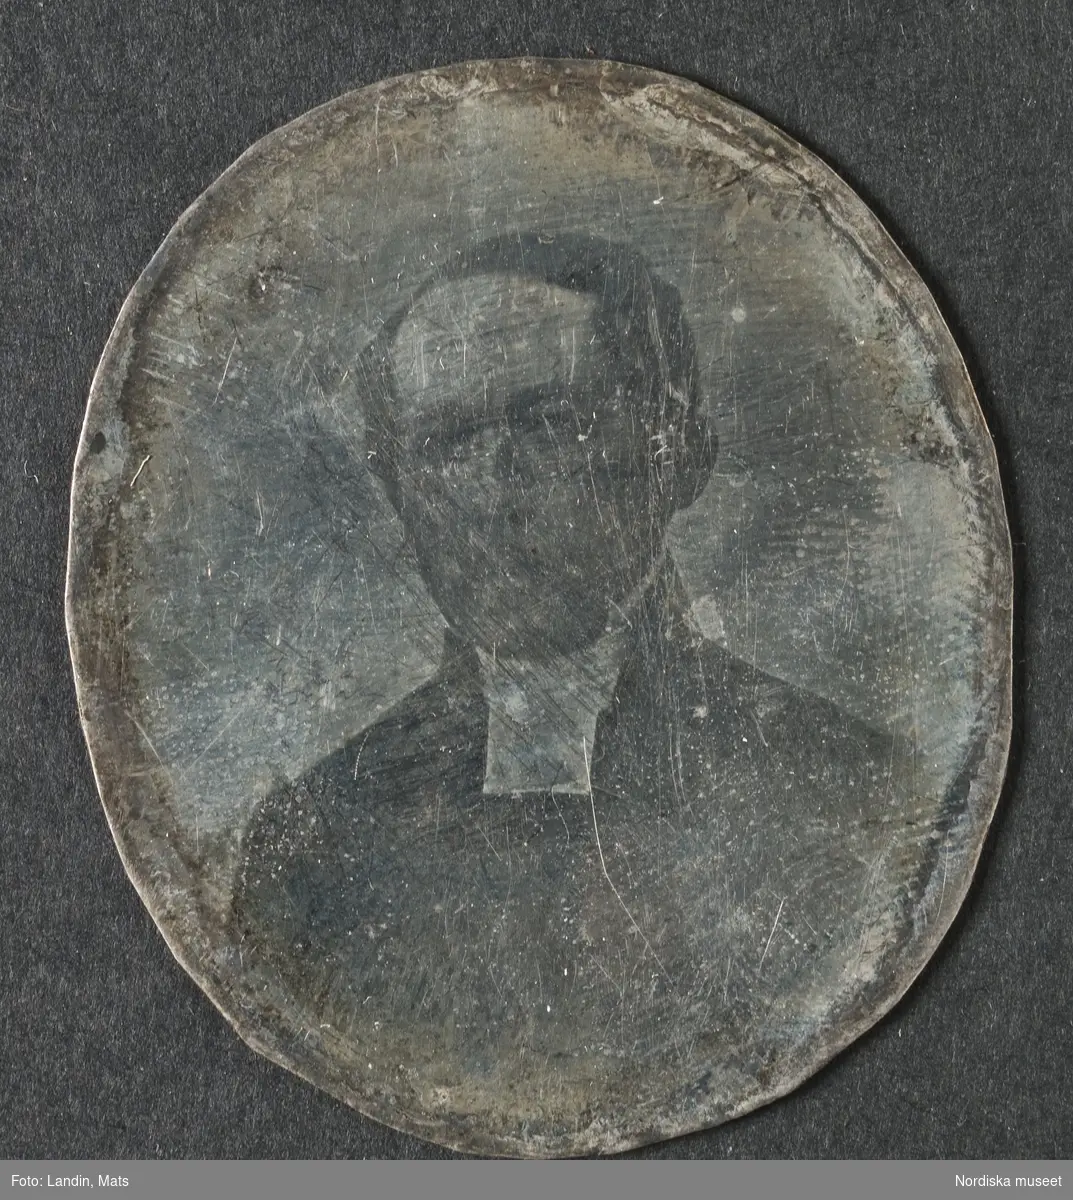 Porträtt av man i prästdräkt. Dagerrotyp / daguerreotyp. Nordiska museet inv.nr 205455.
-
Portrait of an unidentified clergyman. Ninth-plate daguerreotype.